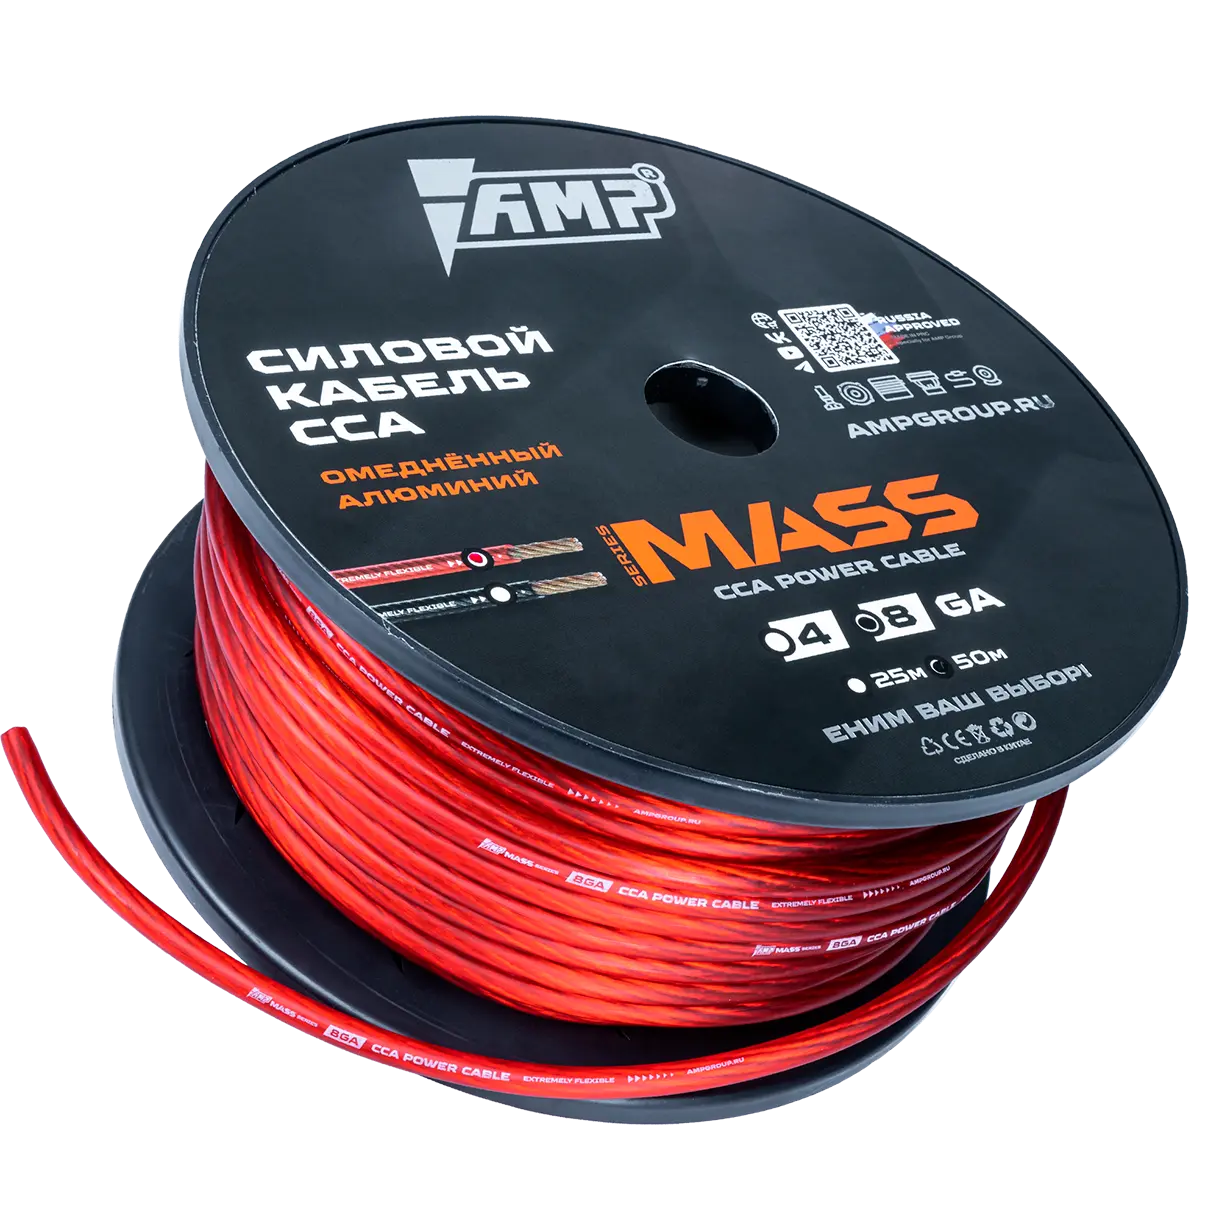 Провод силовой AMP MASS 8Ga CCA Extremely flexible Красный алюминий купить в интернет магазине AMPGROUP.  Провод силовой AMP MASS 8Ga CCA Extremely flexible Красный алюминий   цены, большой каталог, новинки.
